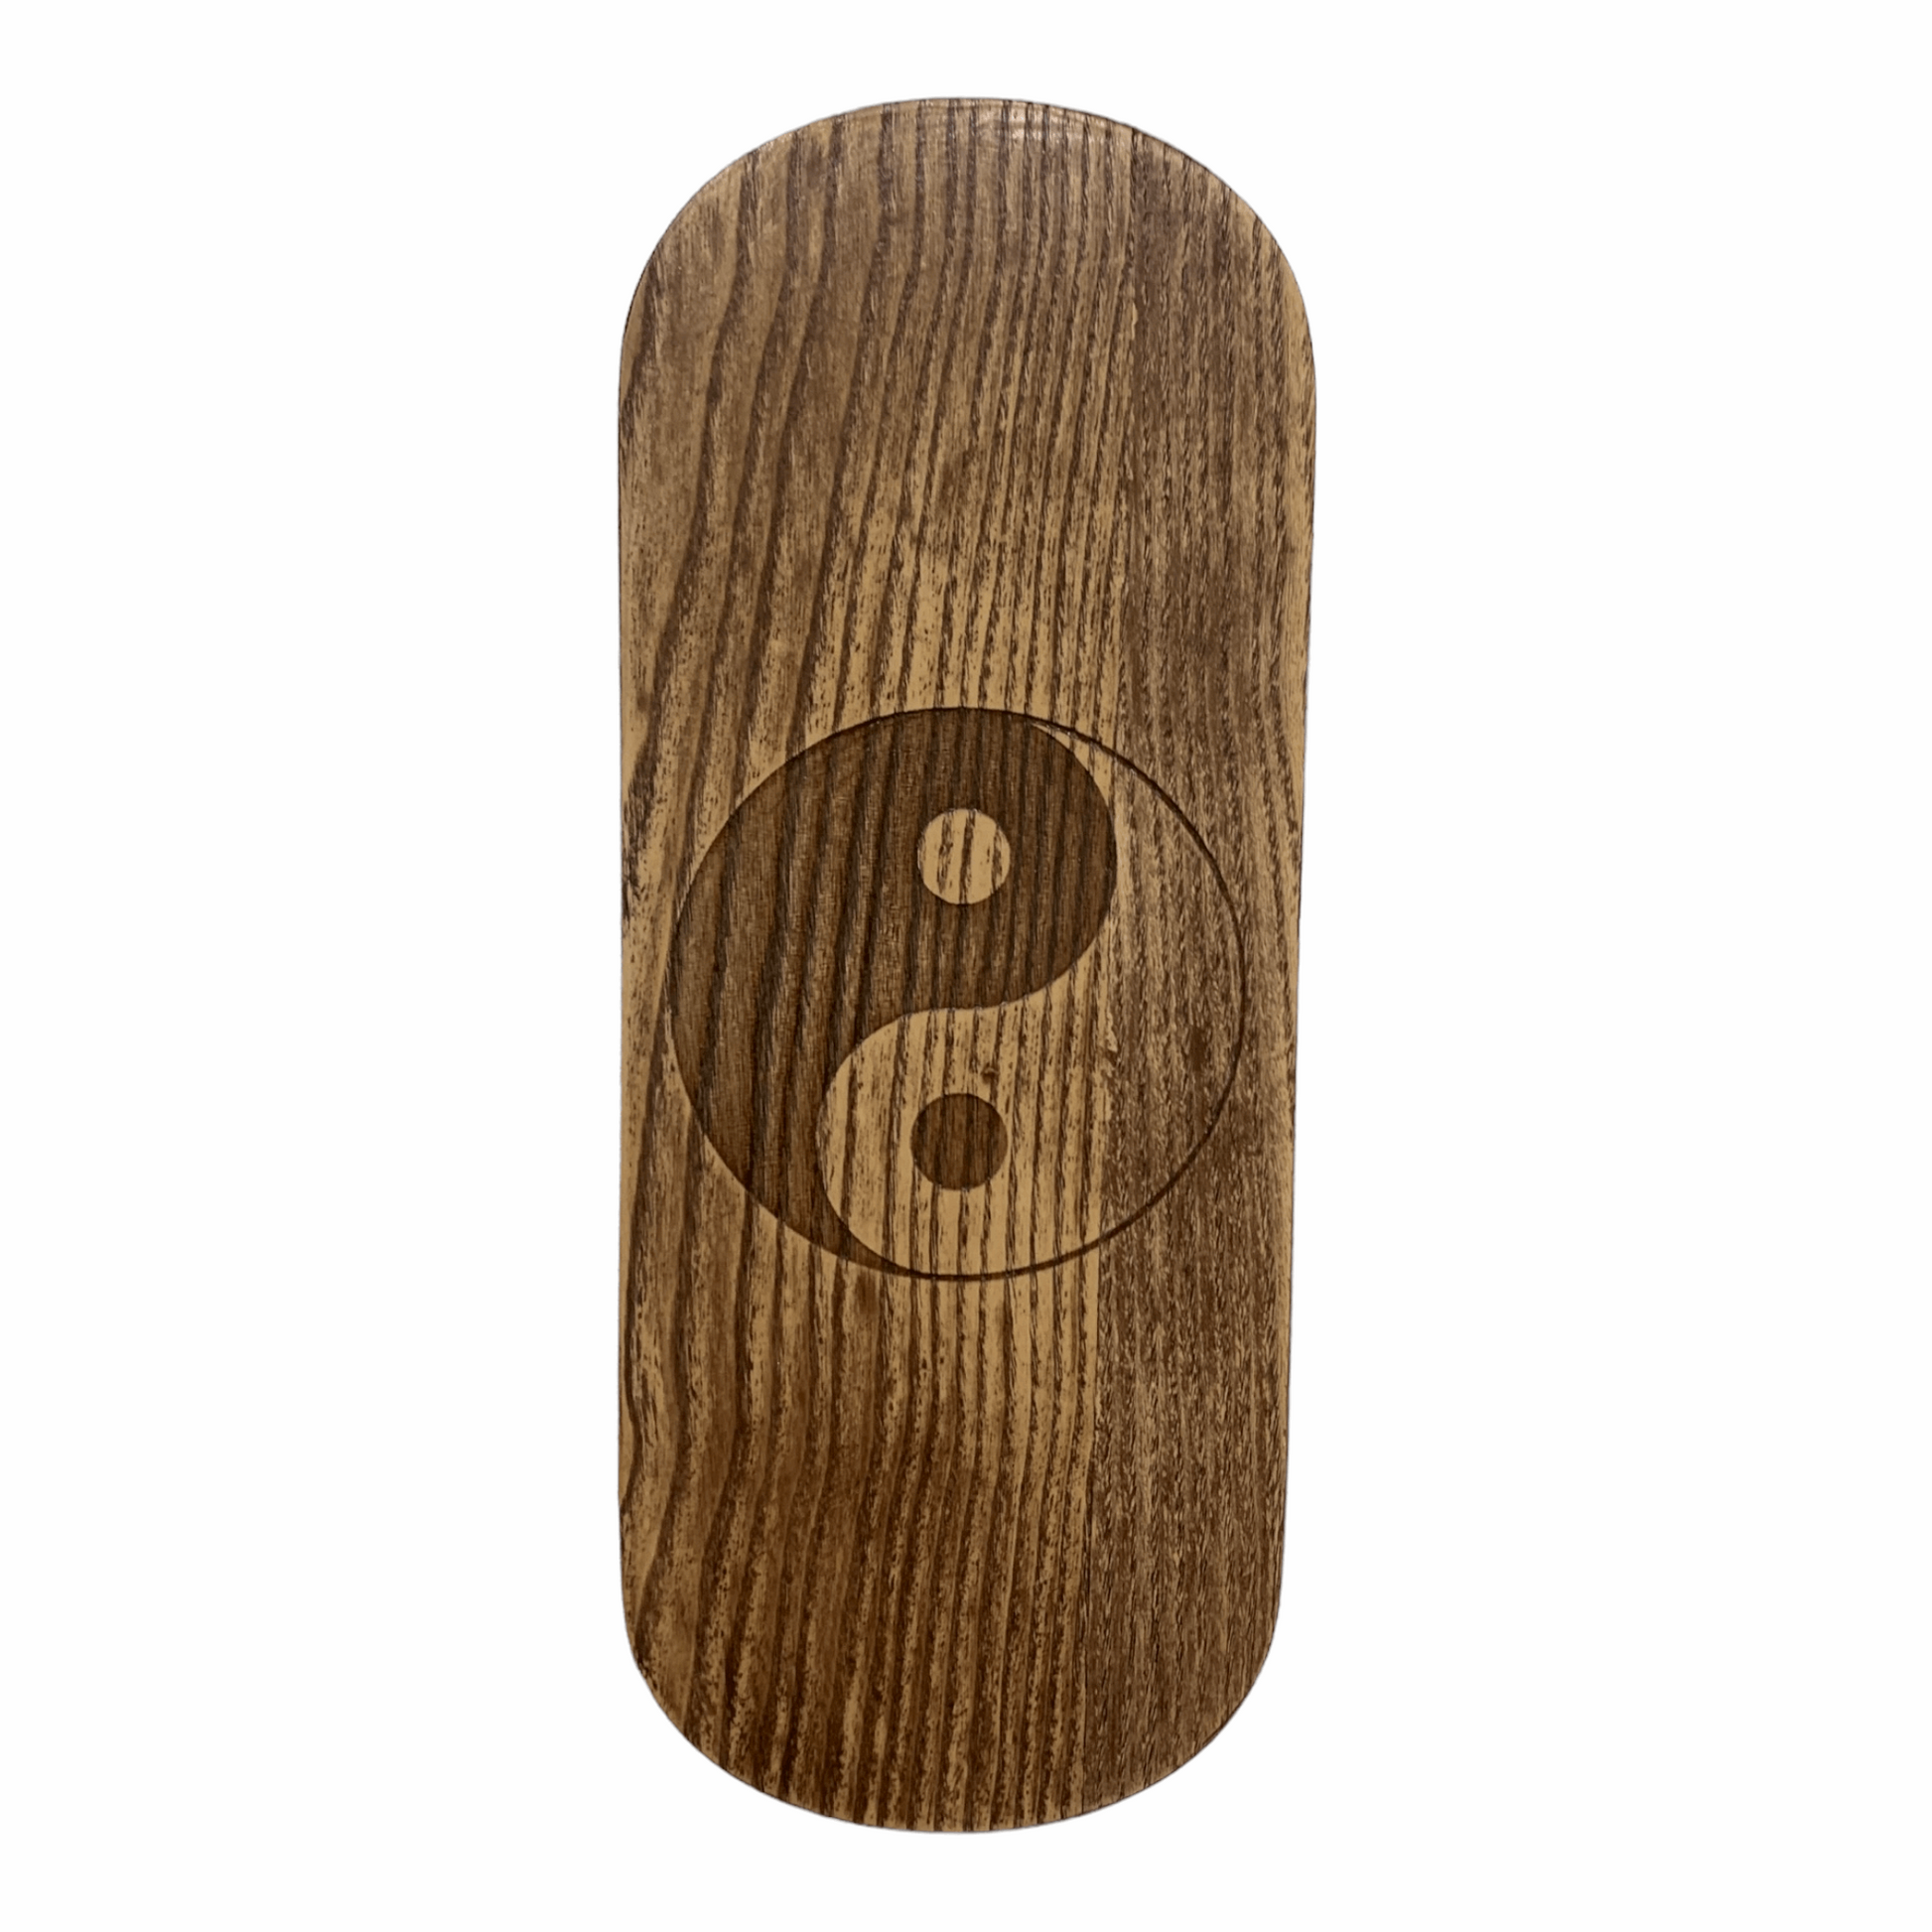 Dynamic Sadhu board for Beginners, Balance board, Yoga board, Nails board 0.3 in (8 mm)